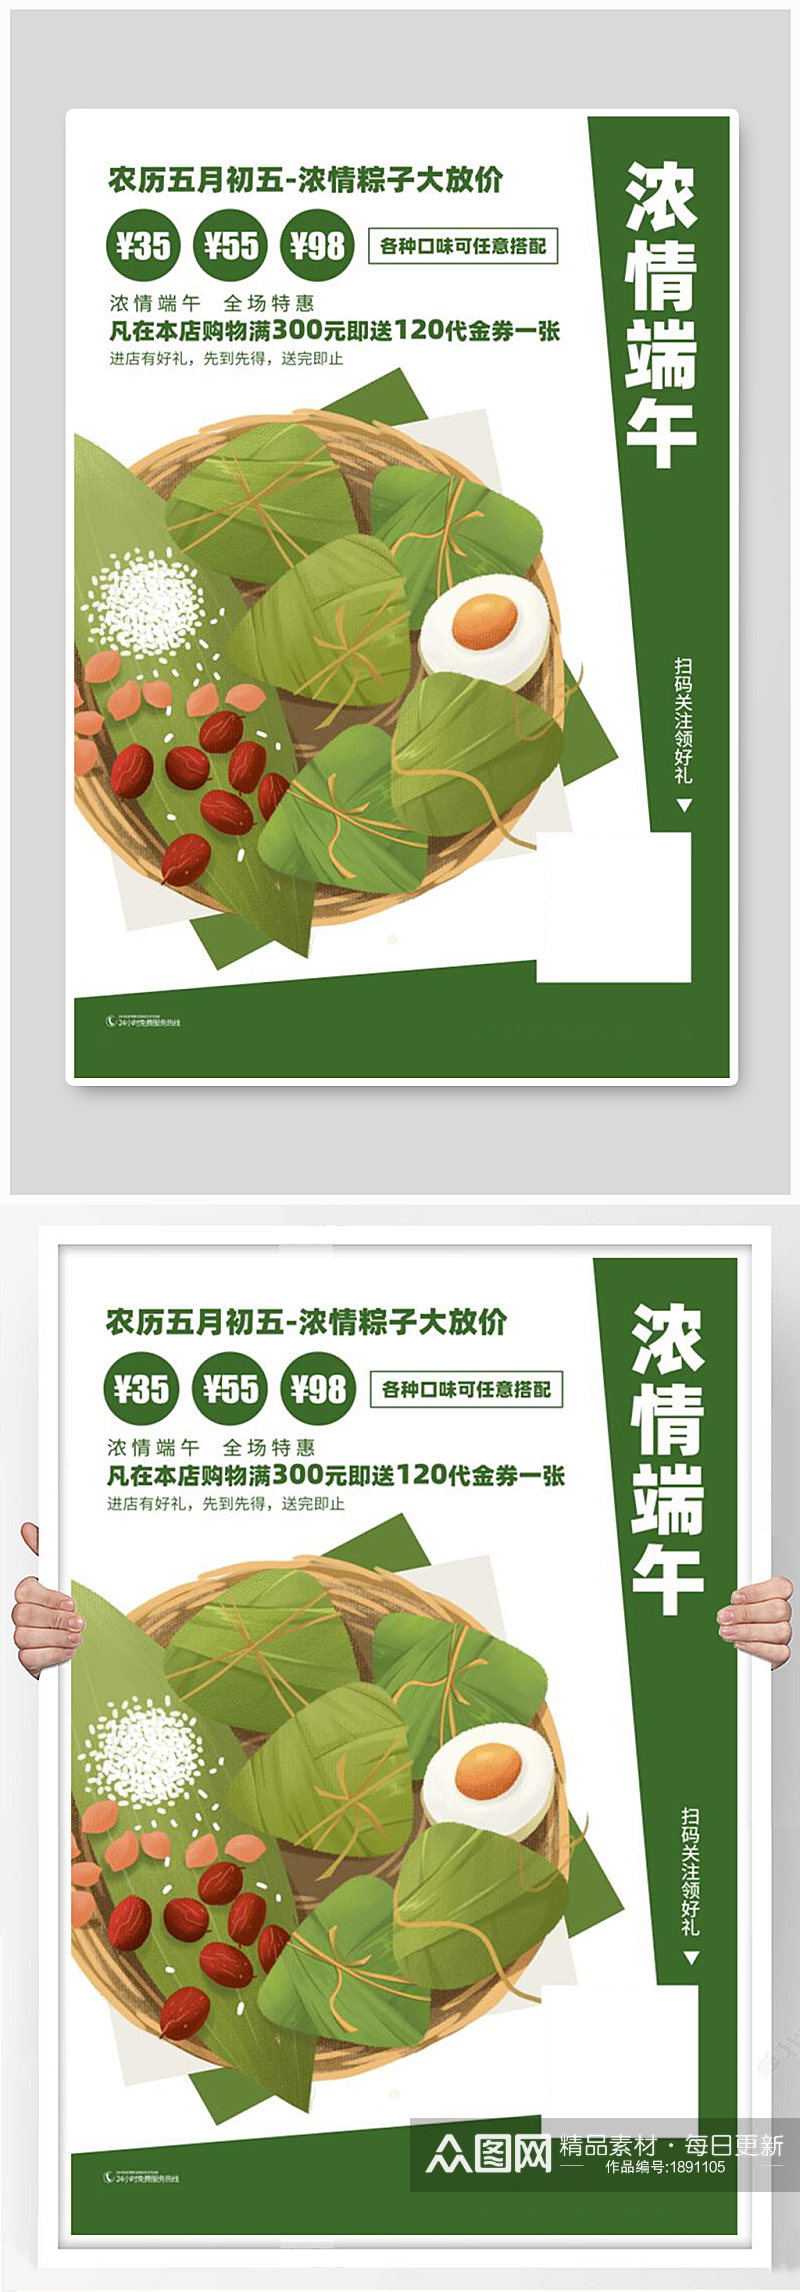 端午节活动粽子促销海报素材